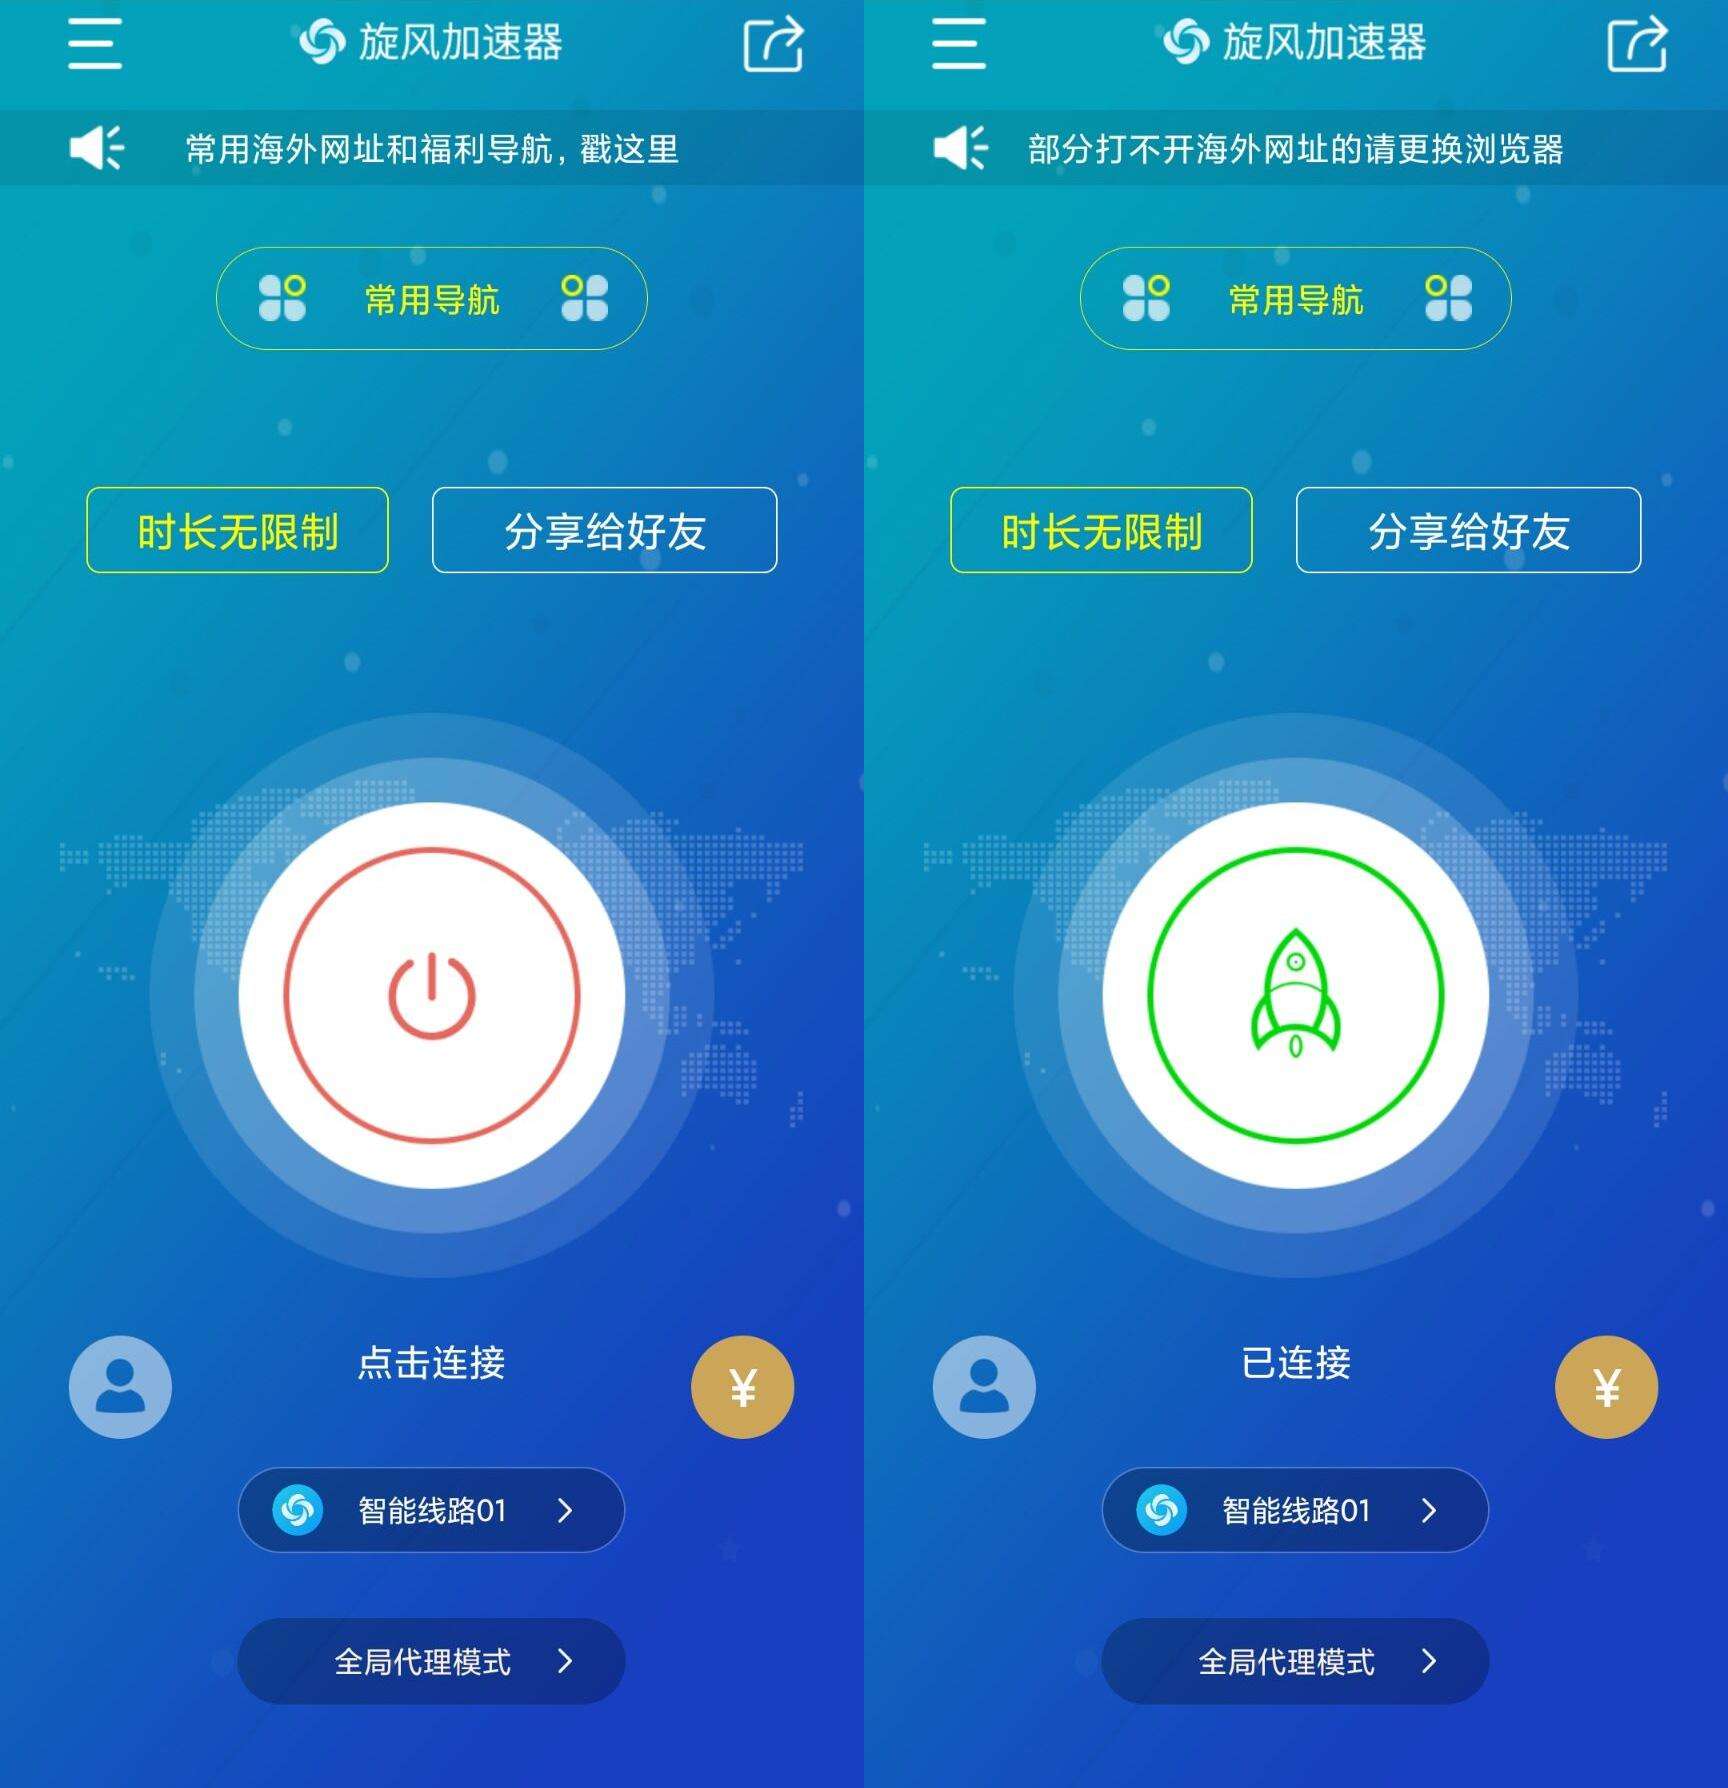 telegreat中文官方版下载加速器的简单介绍